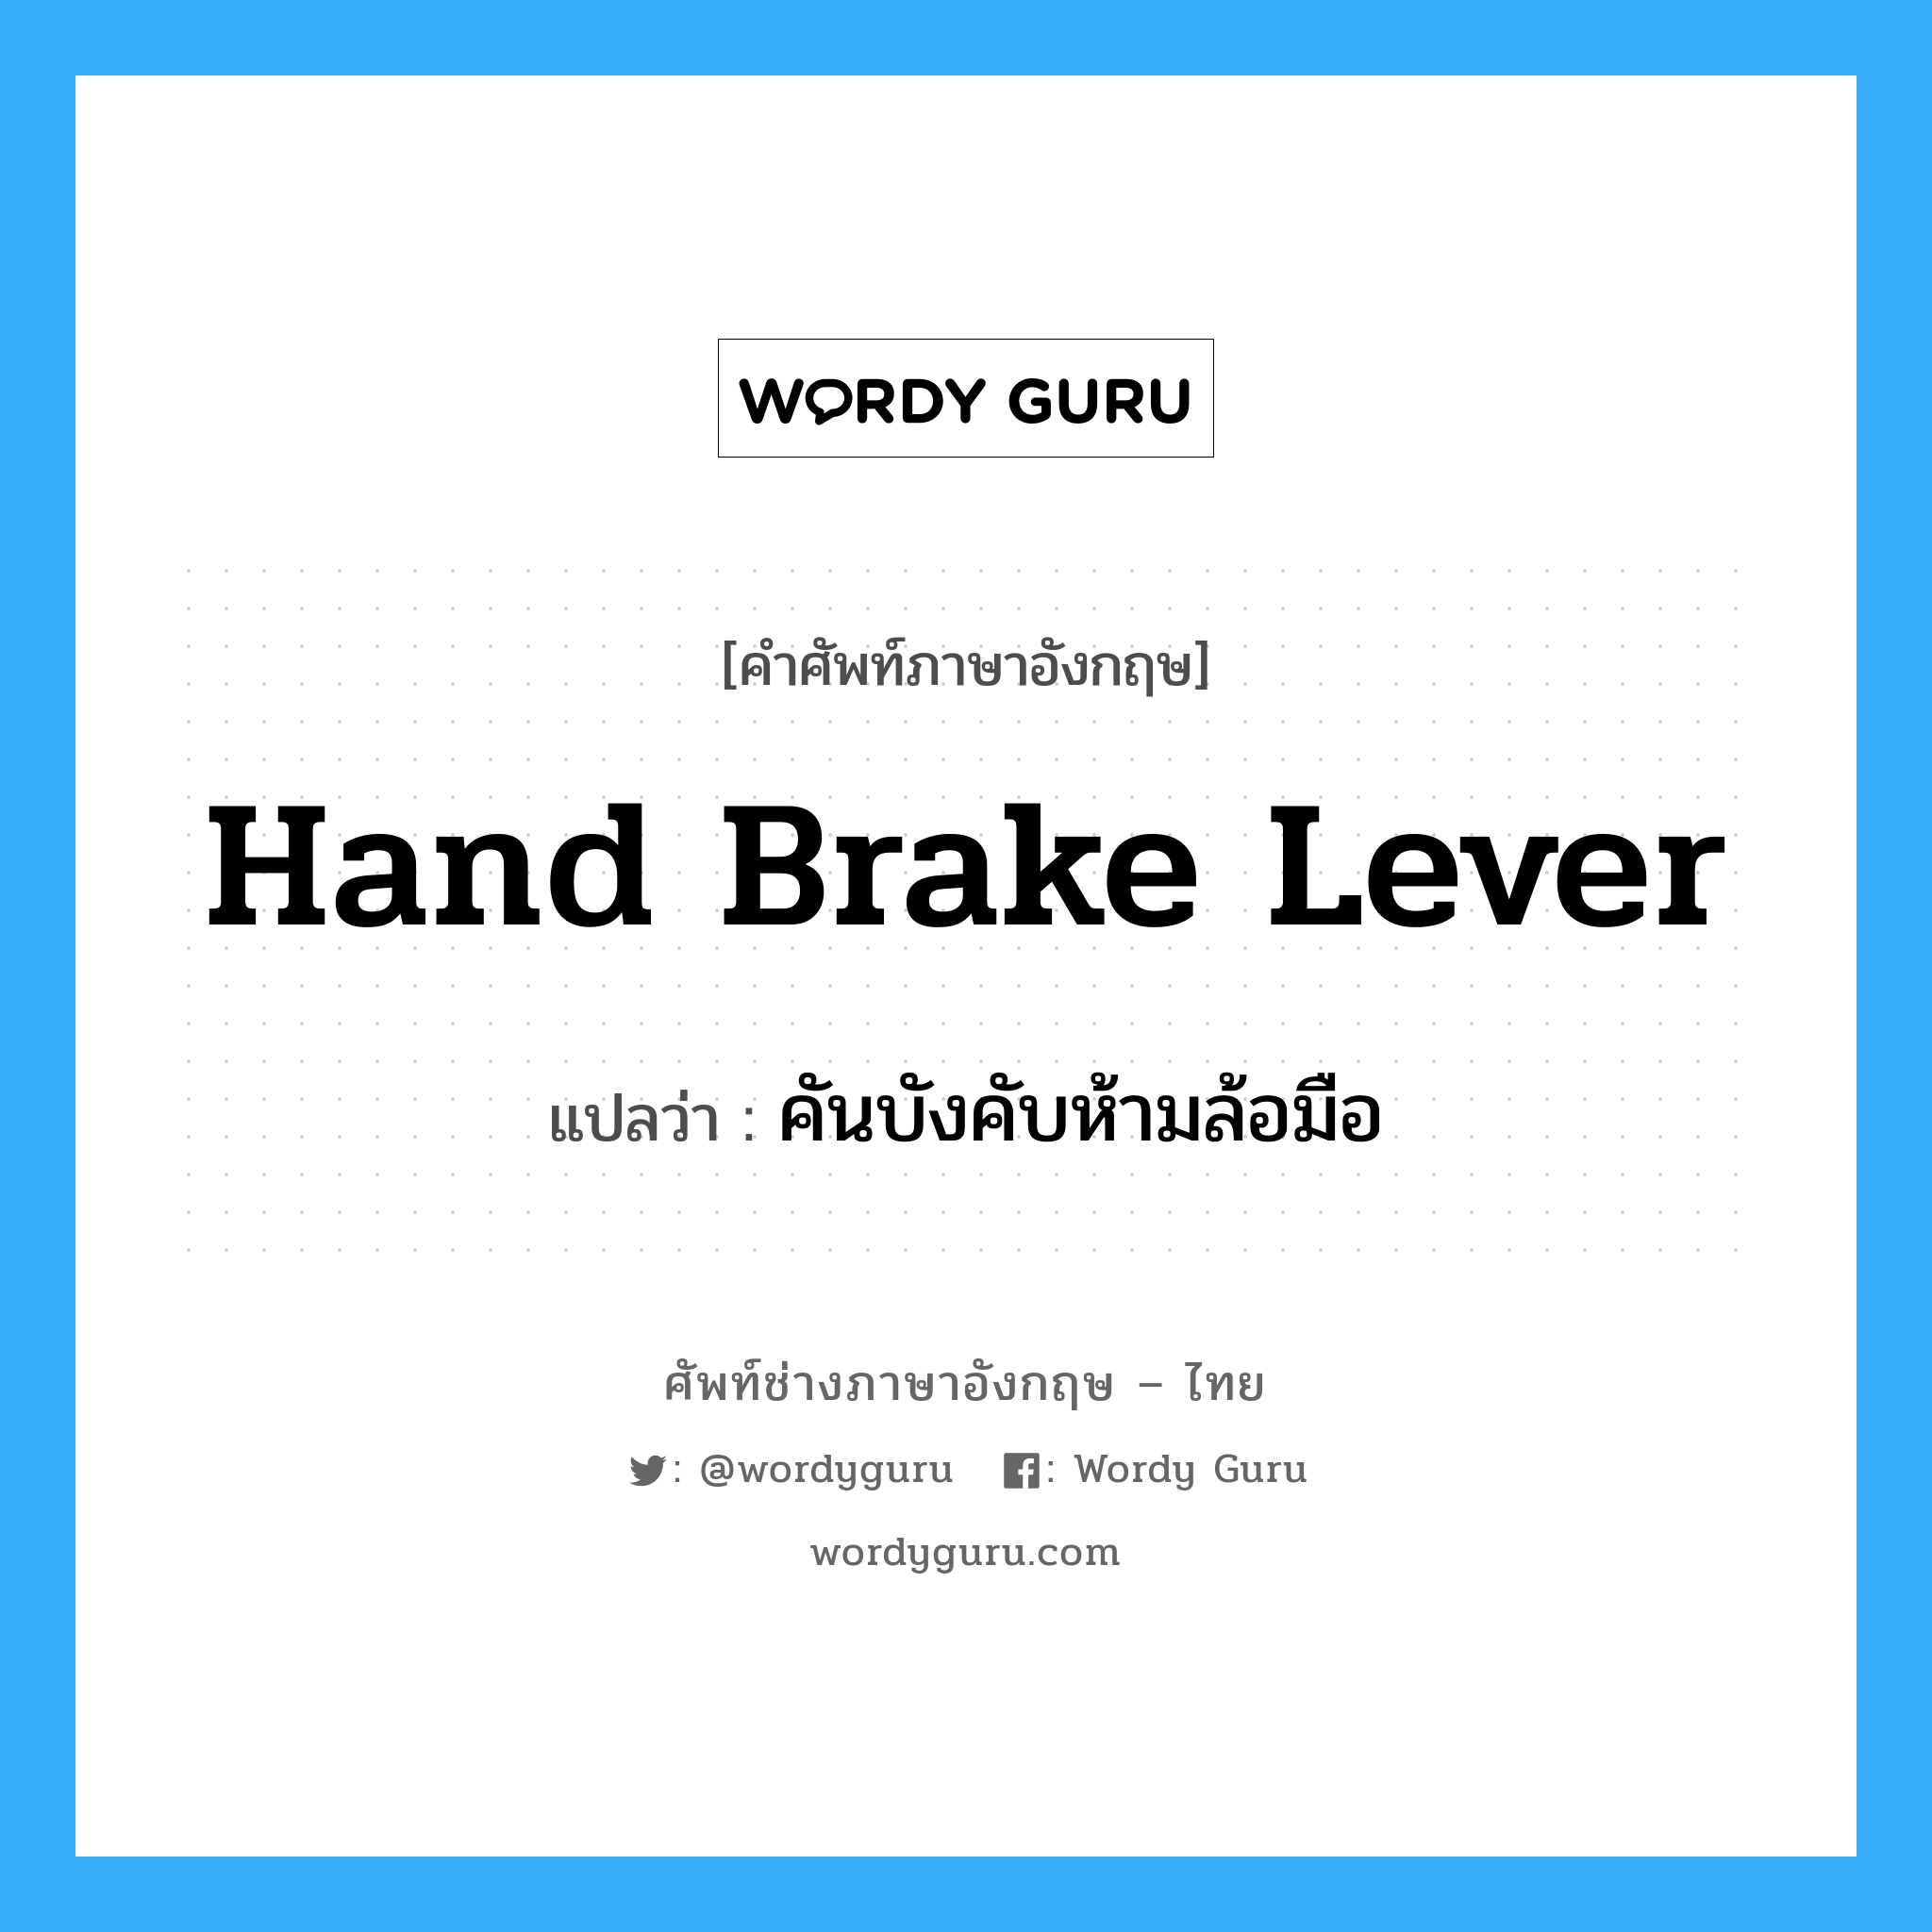 hand brake lever แปลว่า?, คำศัพท์ช่างภาษาอังกฤษ - ไทย hand brake lever คำศัพท์ภาษาอังกฤษ hand brake lever แปลว่า คันบังคับห้ามล้อมือ